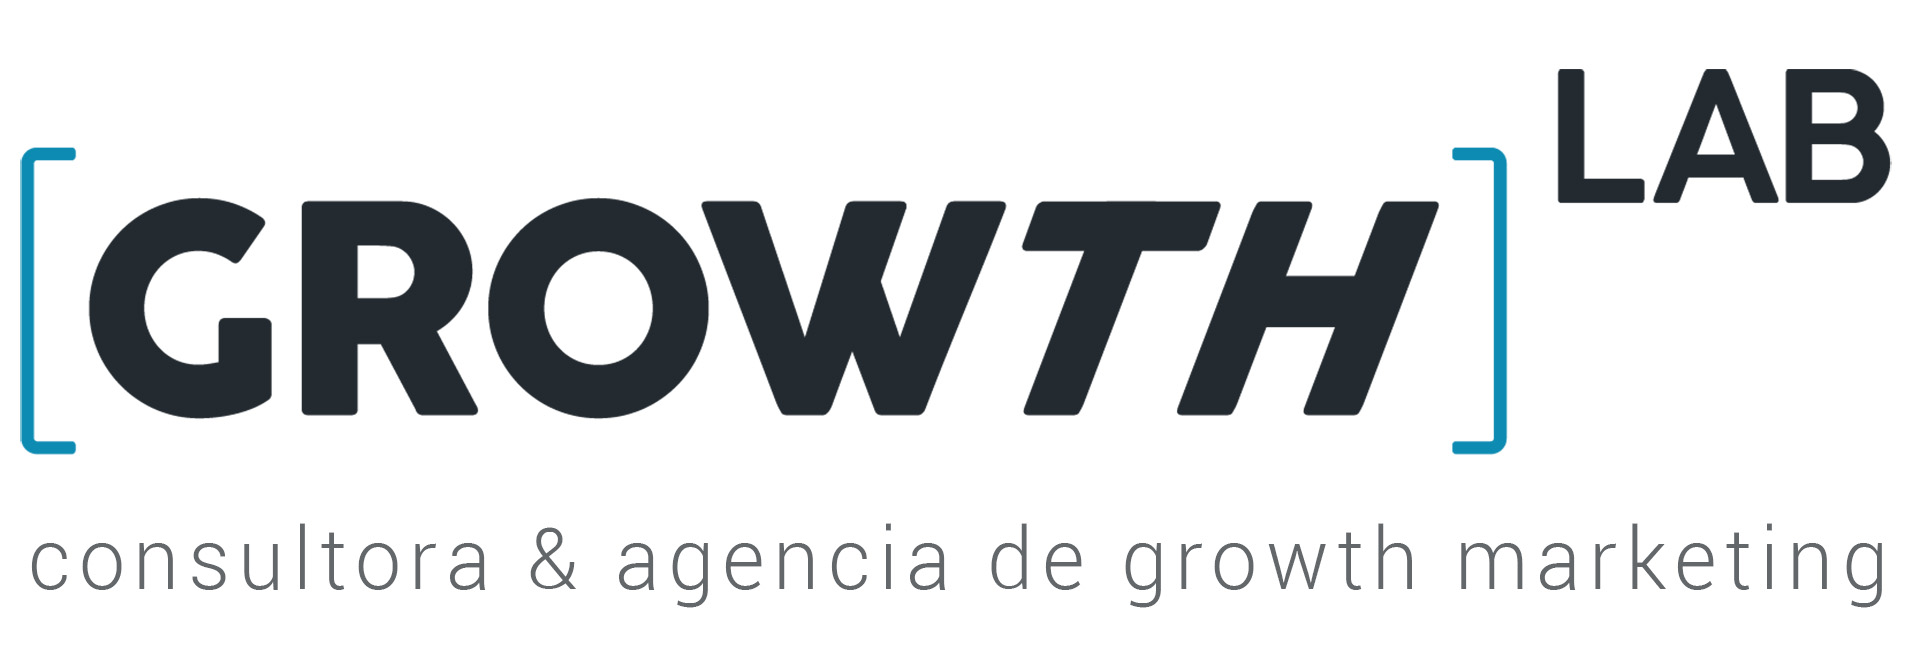 Growth Lab_logo blog